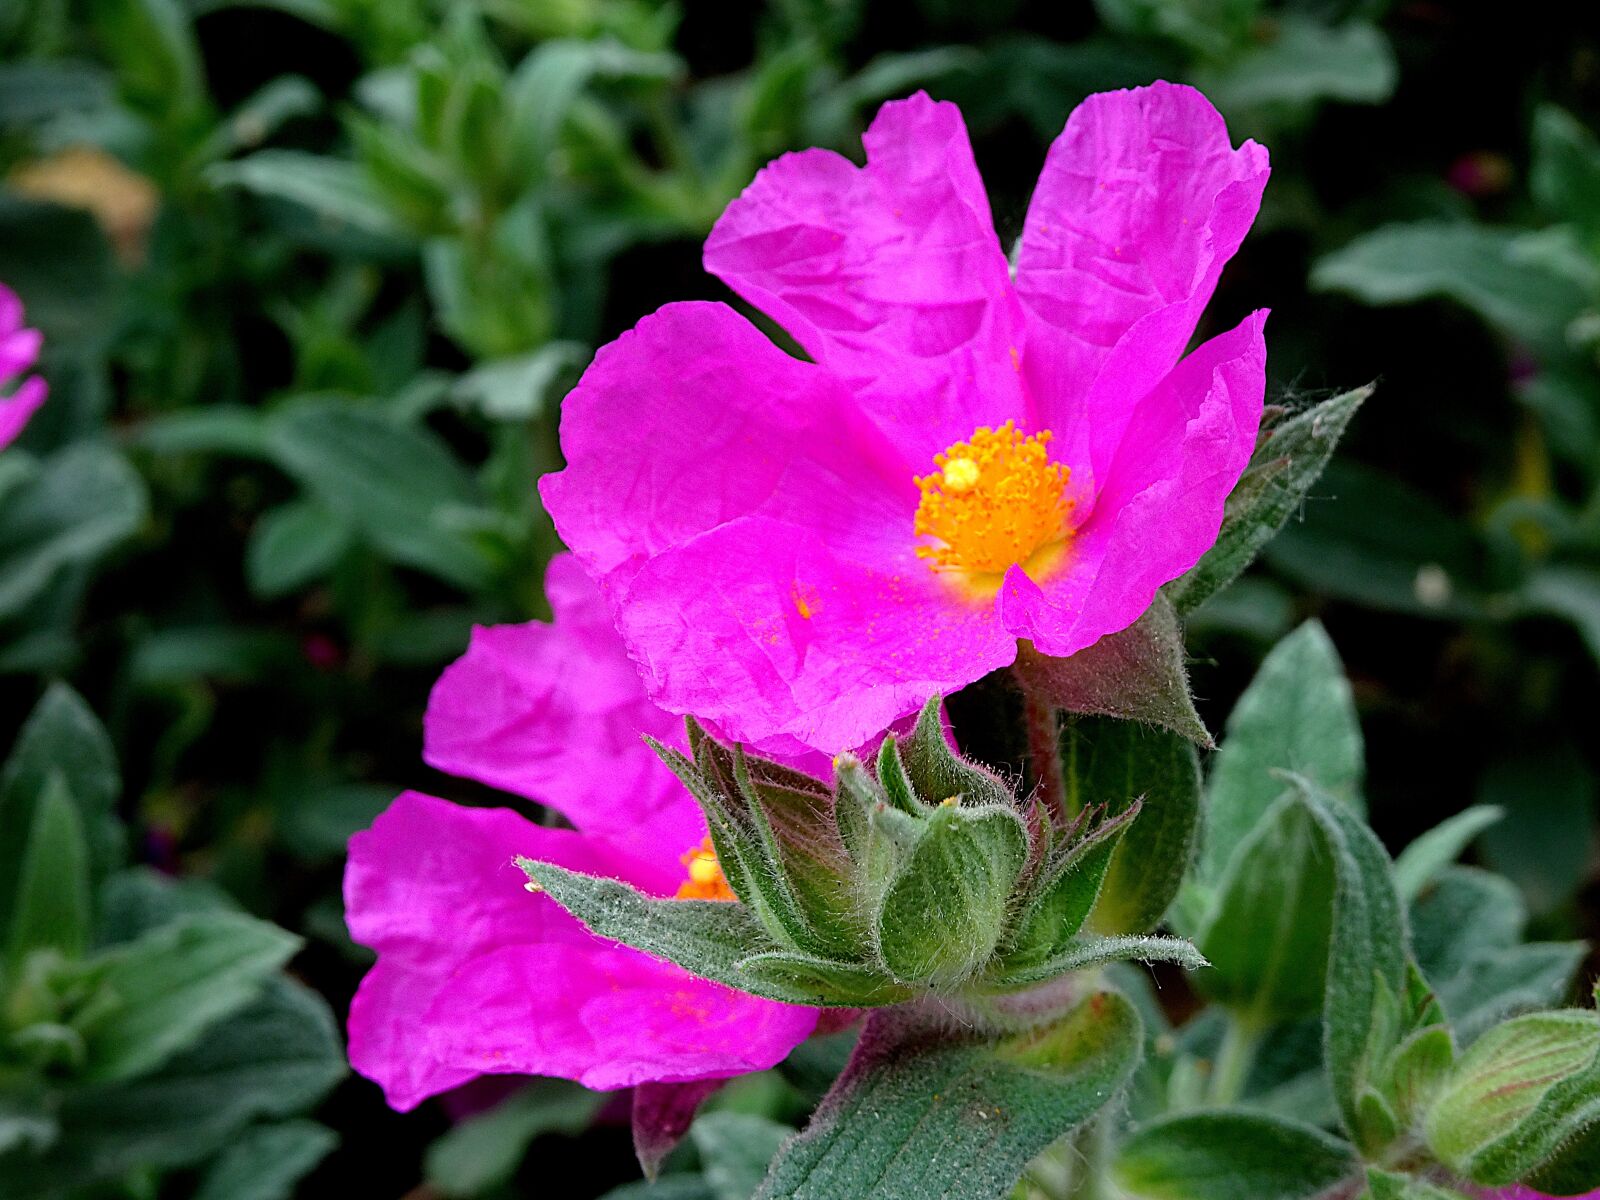 Sony Cyber-shot DSC-HX90V sample photo. Flower, plant, dark pink photography